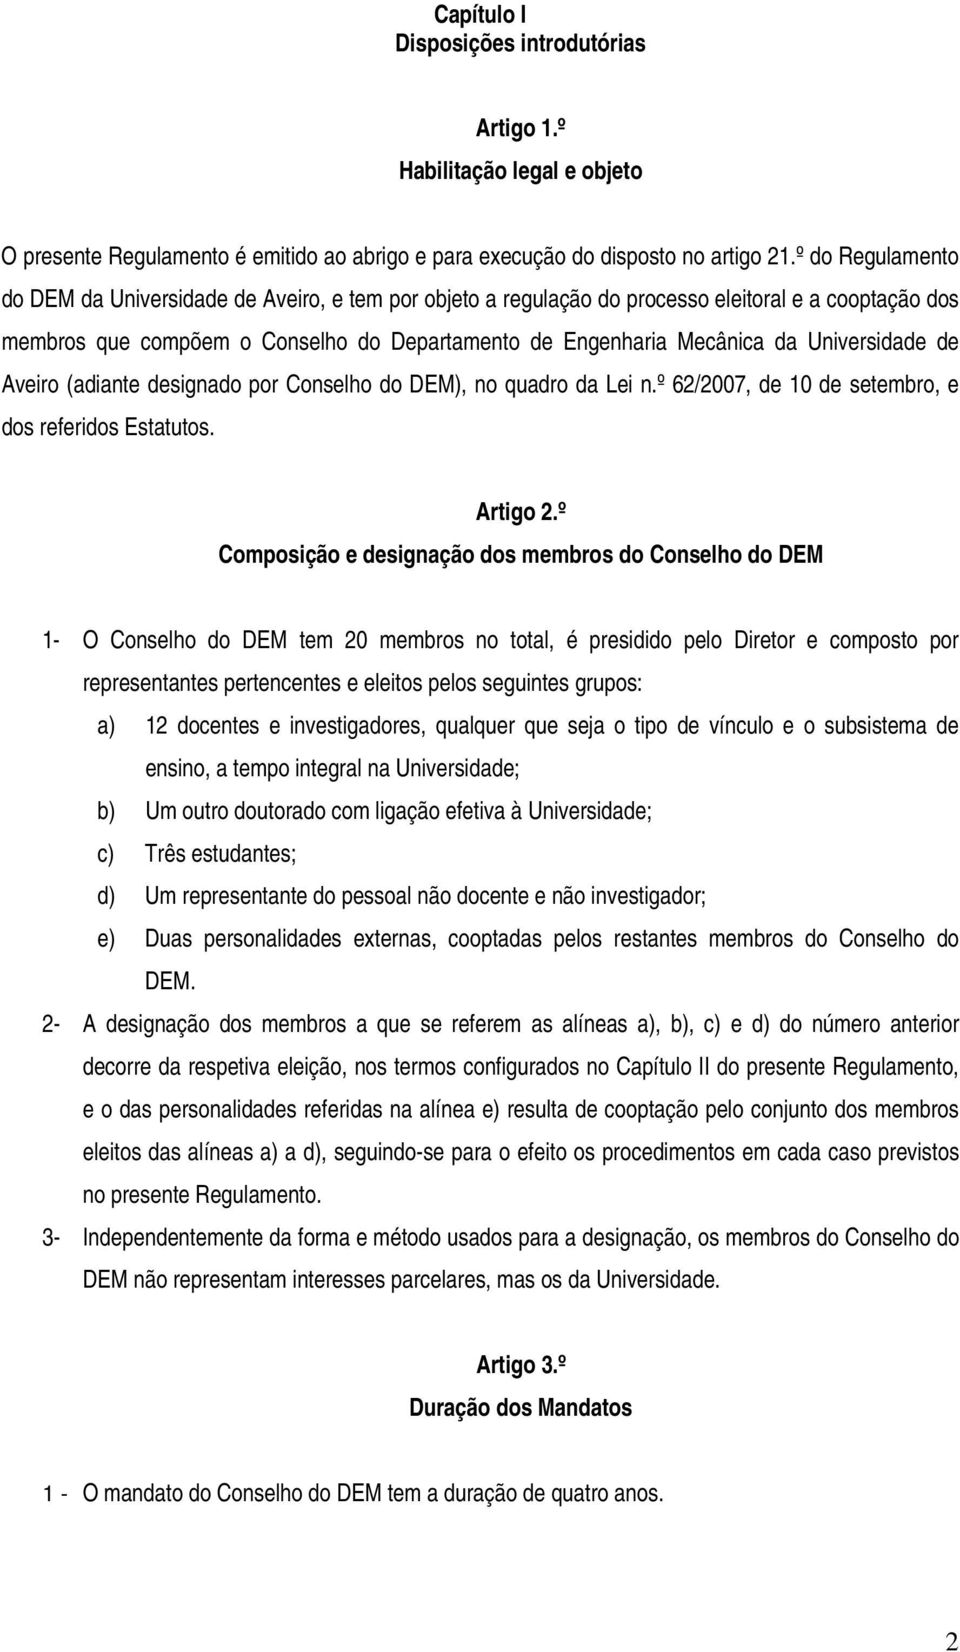 Universidade de Aveiro (adiante designado por Conselho do DEM), no quadro da Lei n.º 62/2007, de 10 de setembro, e dos referidos Estatutos. Artigo 2.